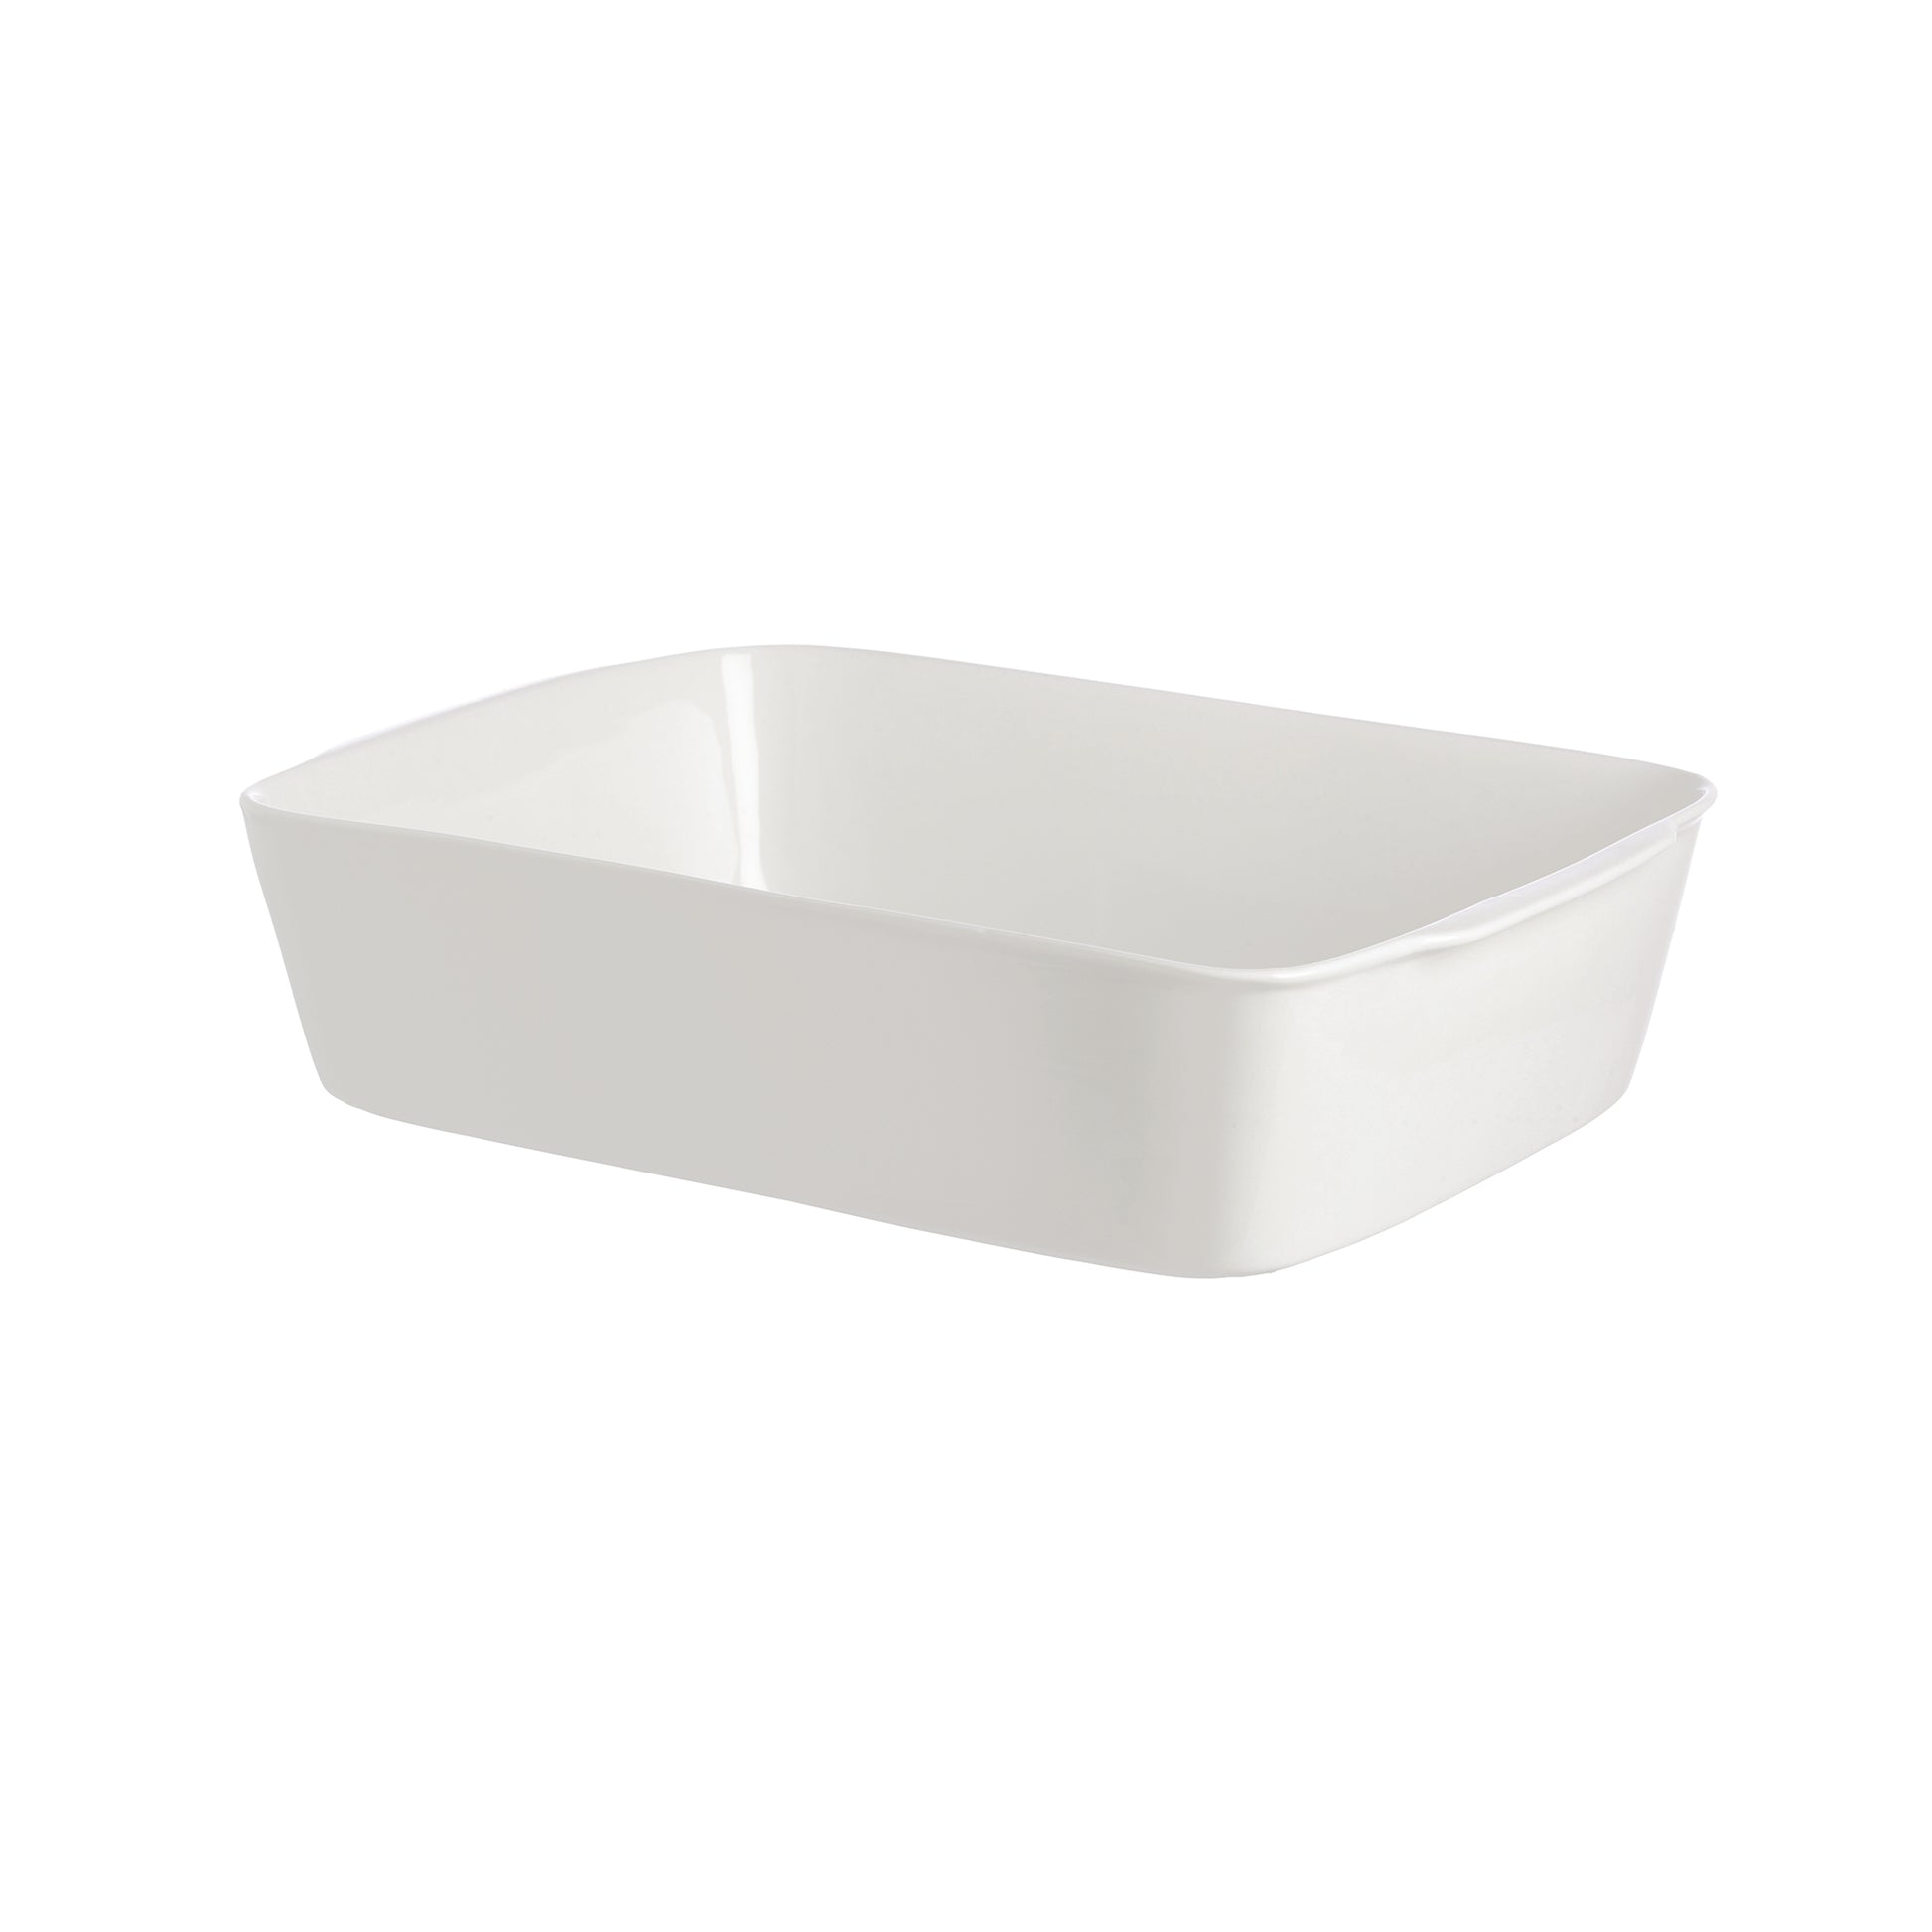 Teglia rettangolare lasagne in porcellana bianca. Dimensioni: 25x35xh7,5 cm. In negozio e online su tuttochic.it